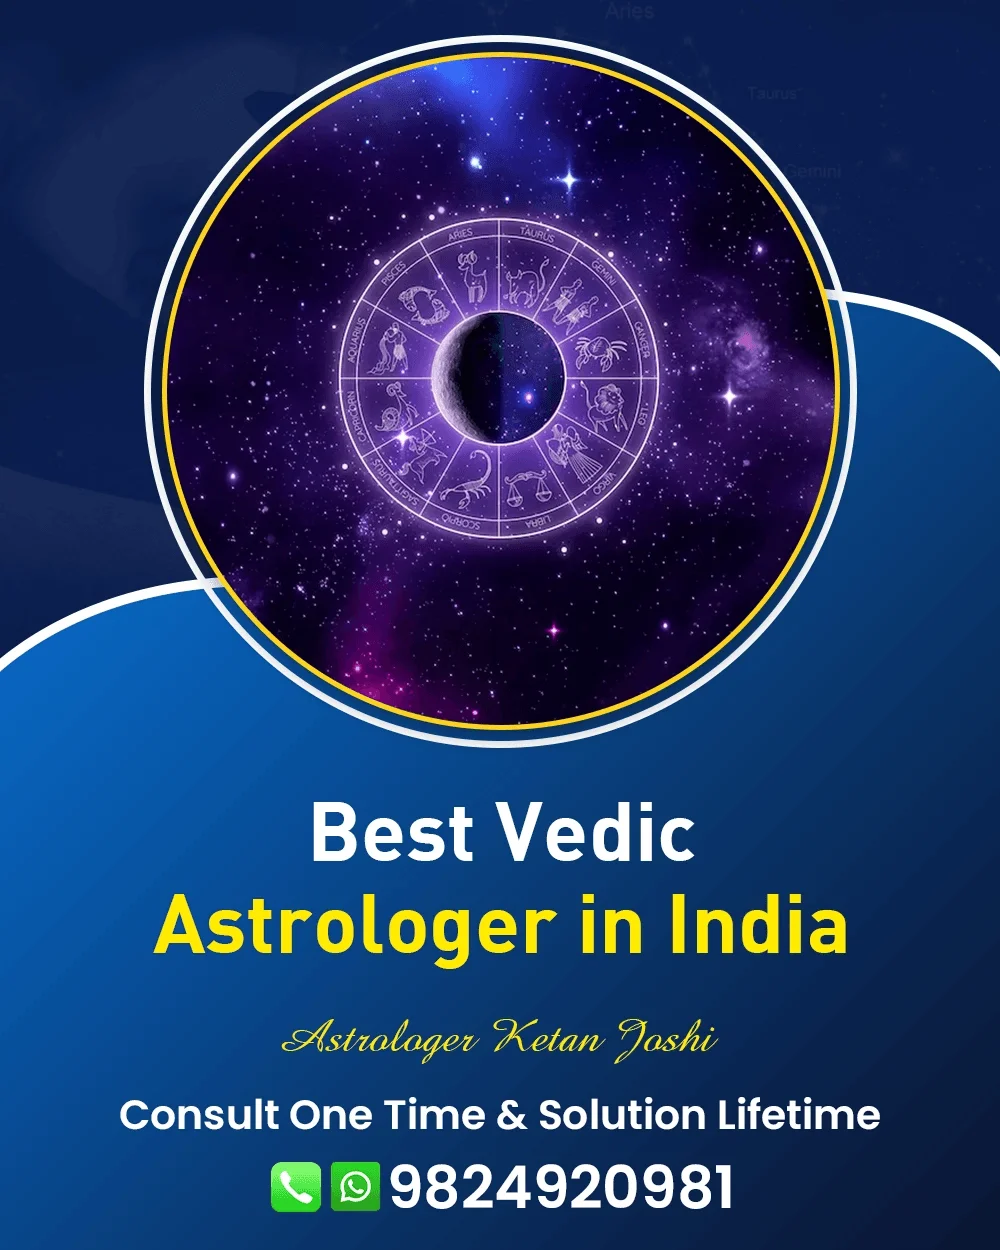 Best Astrologer In Varanasi